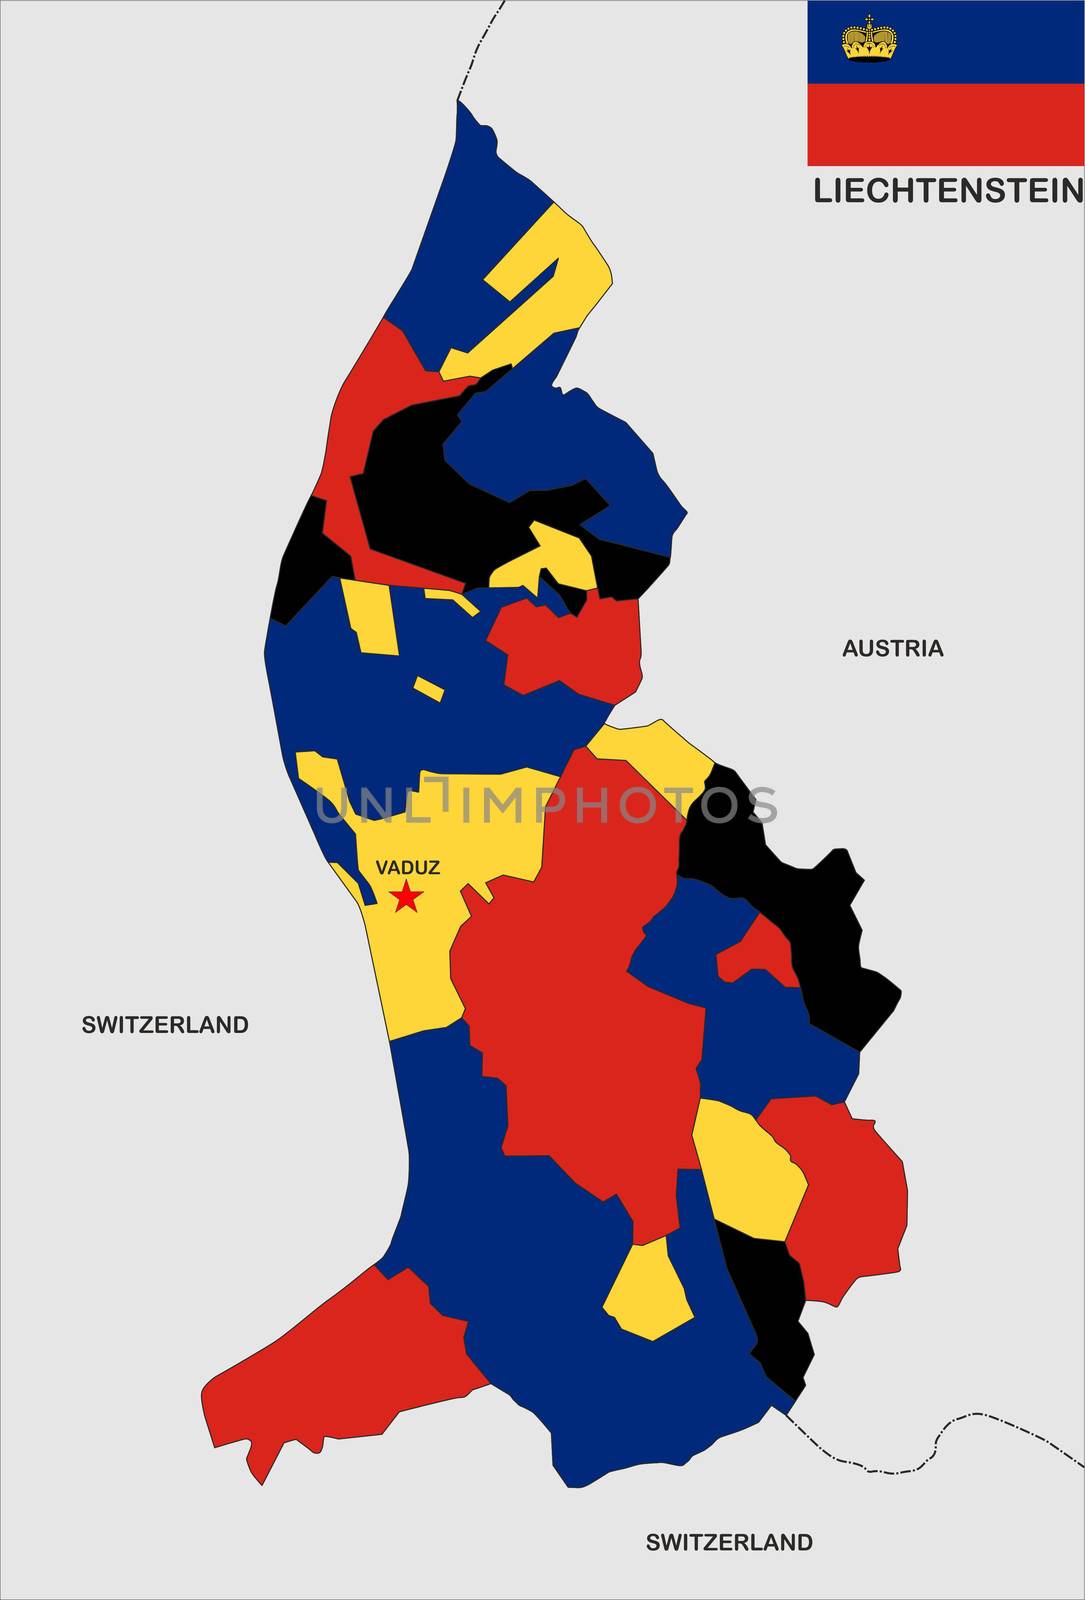 very big size liechtenstein political map with flag